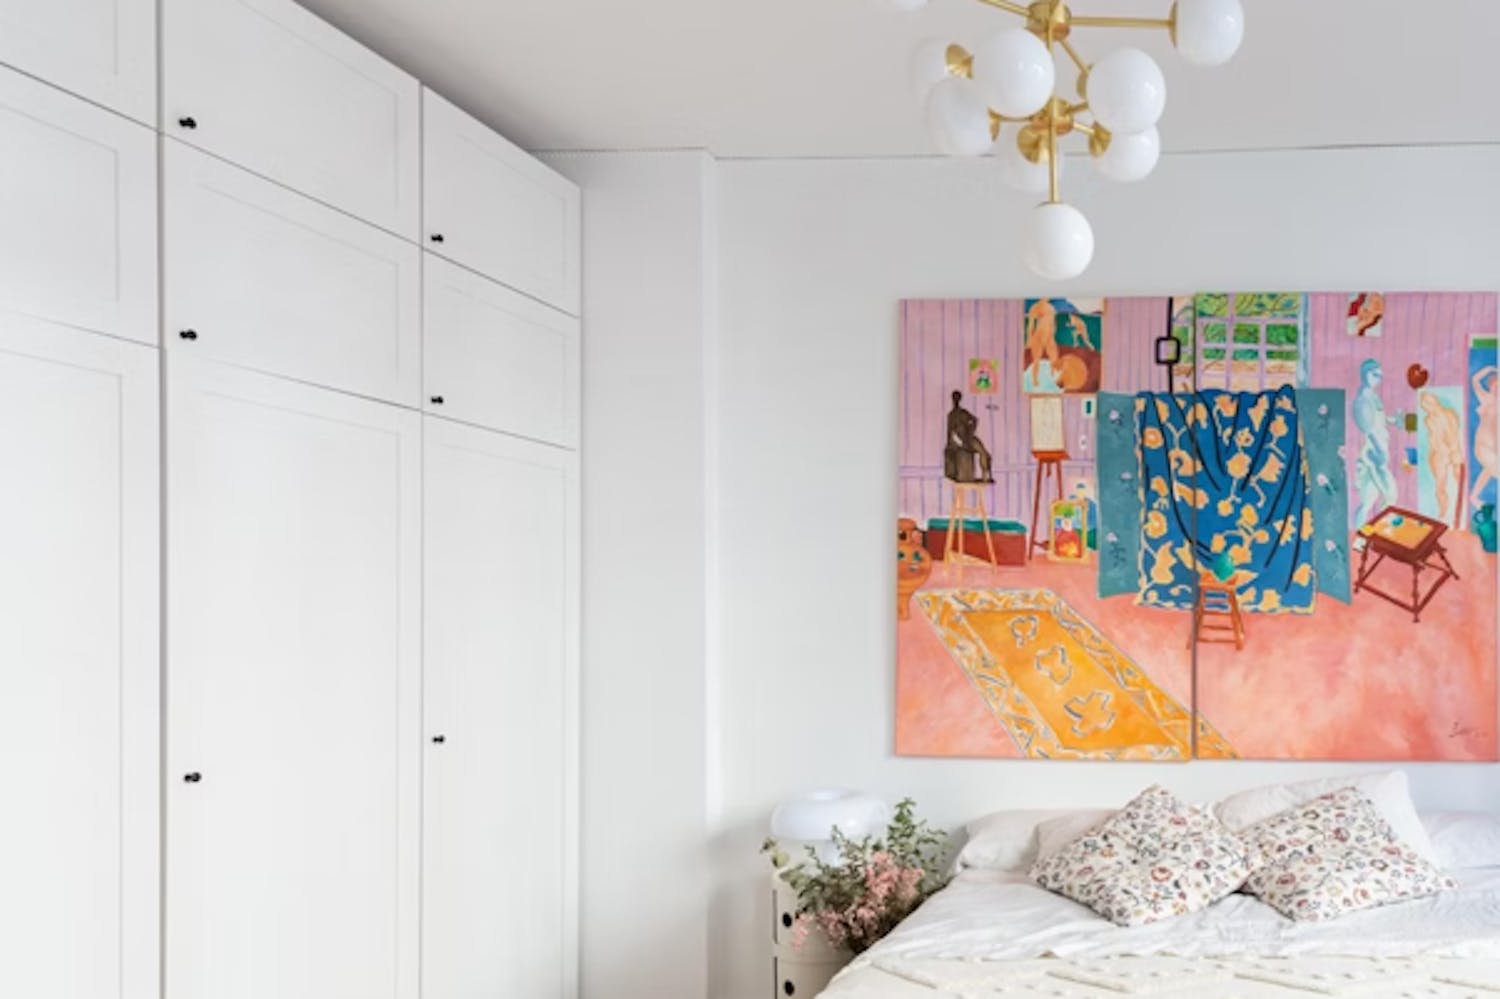 Décor mural pour une chambre moderne et douce  Deco chambre a coucher,  Idée chambre, Deco chambre parental